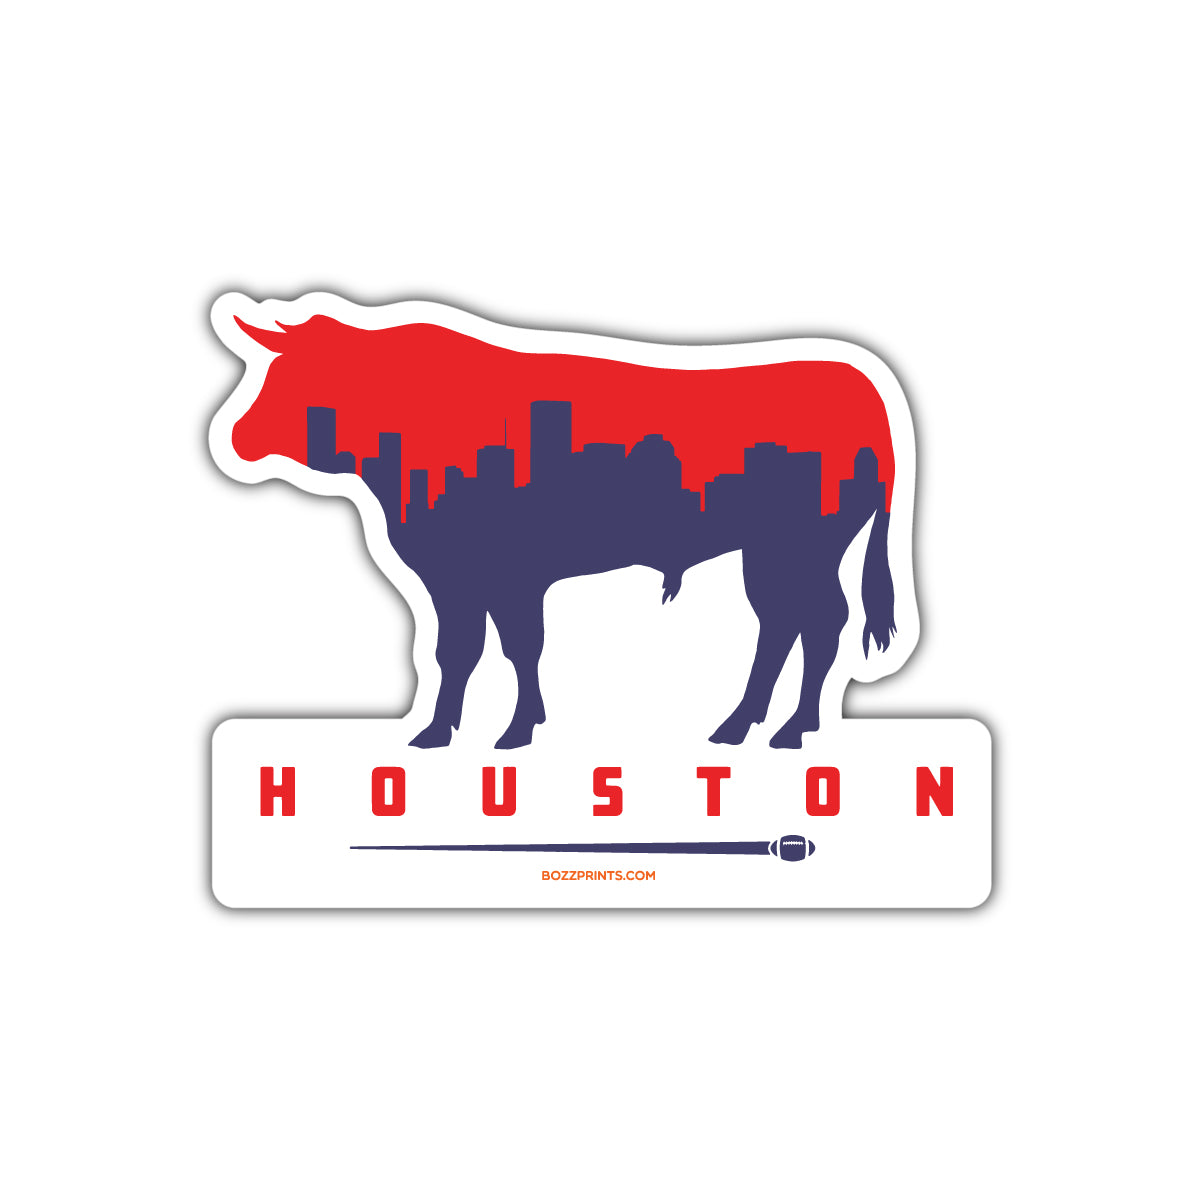 Houston Football